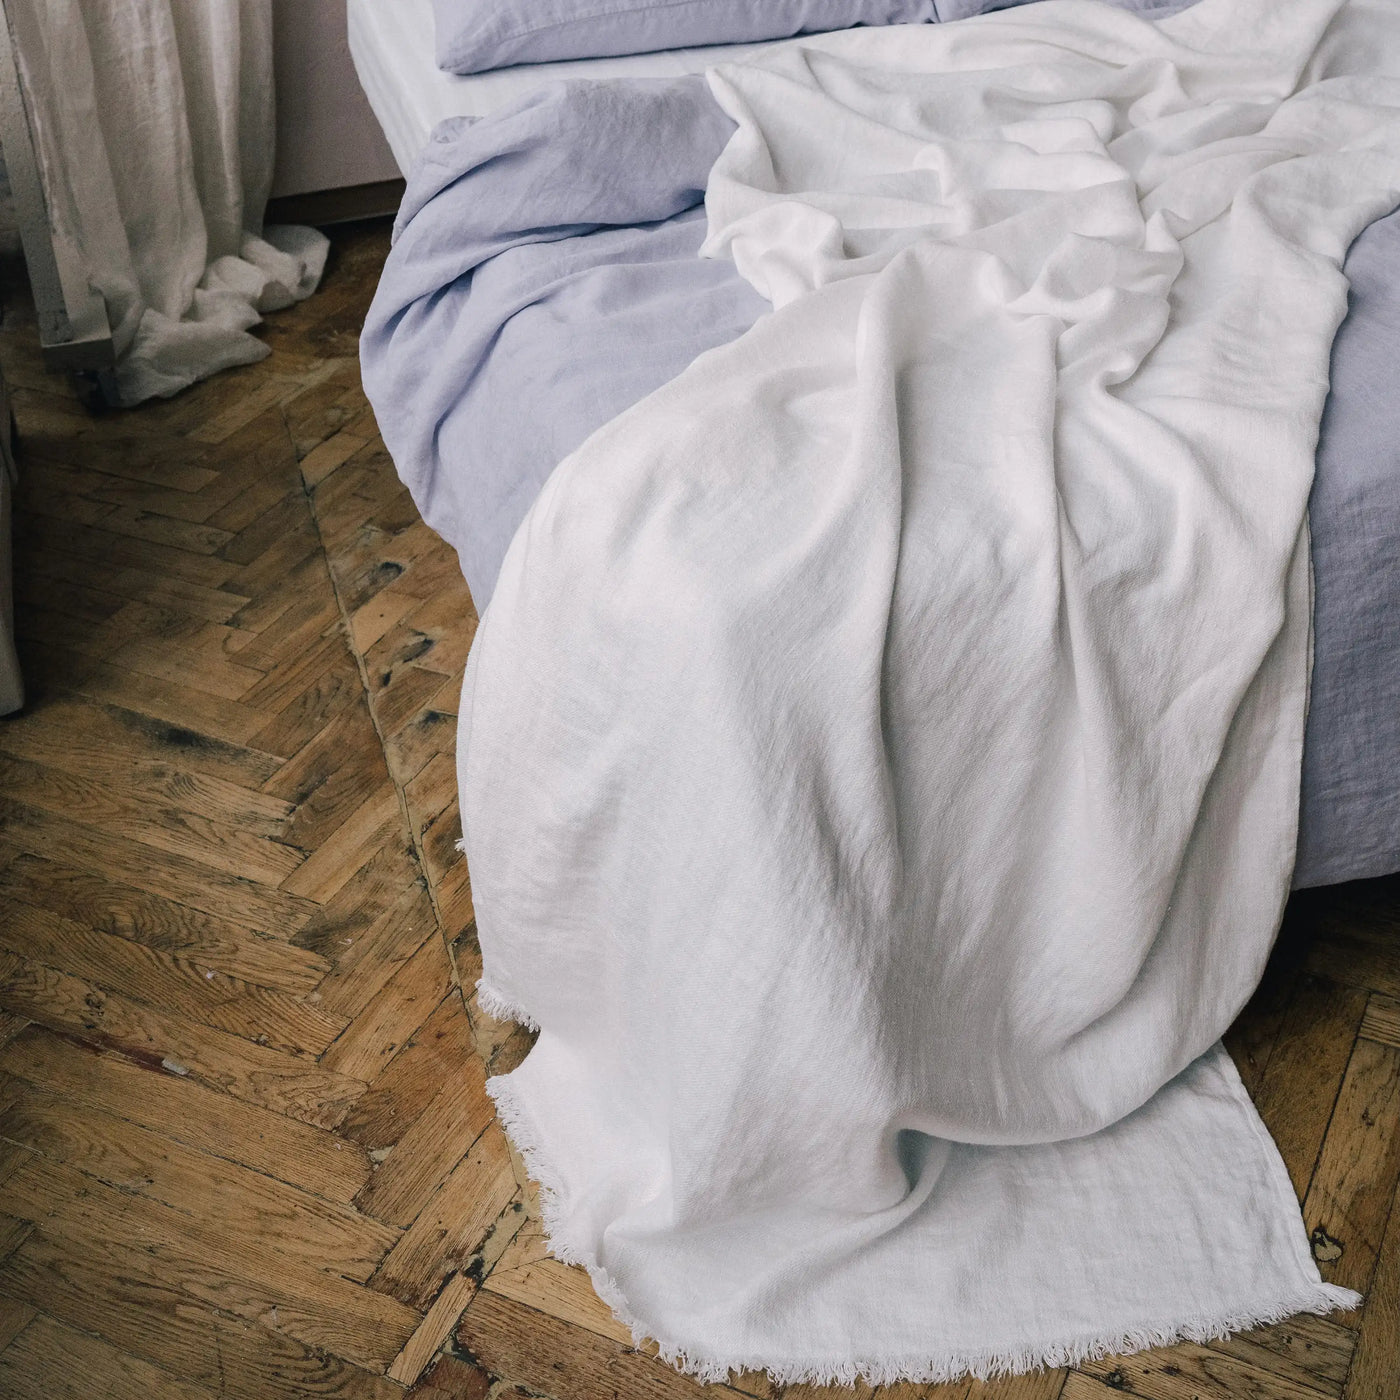 Acquista ora la coperta di lino premium bianca su Tintory Store 2